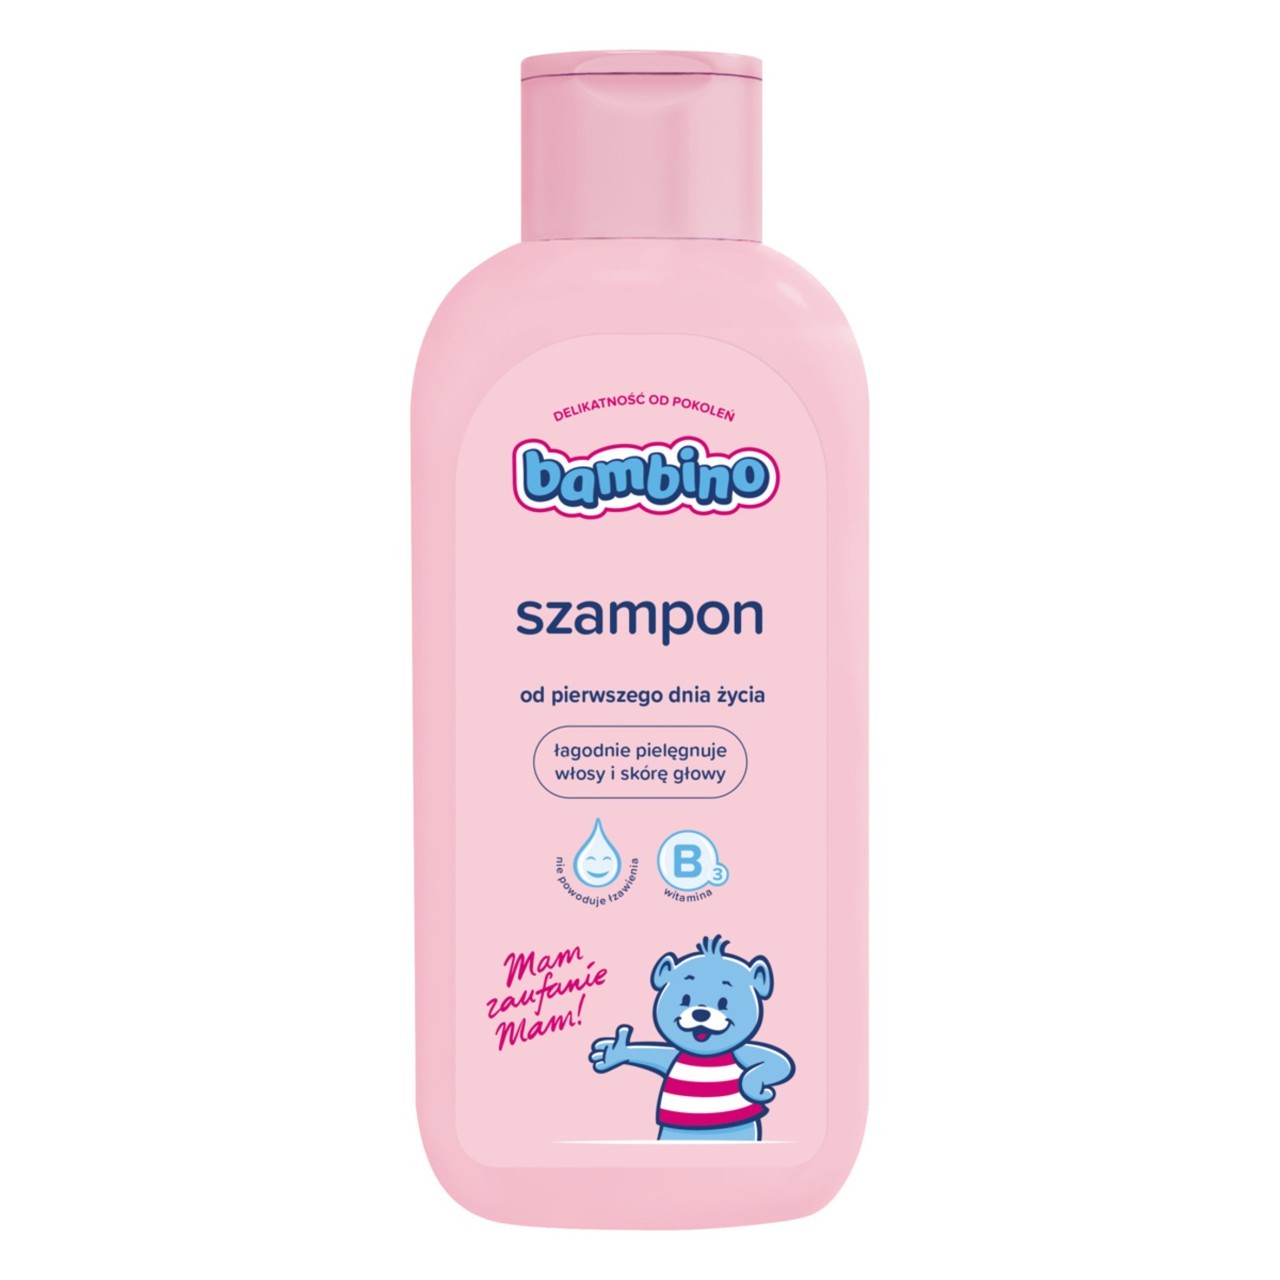 bambino szampon z witaminą b3 biedronka 2019